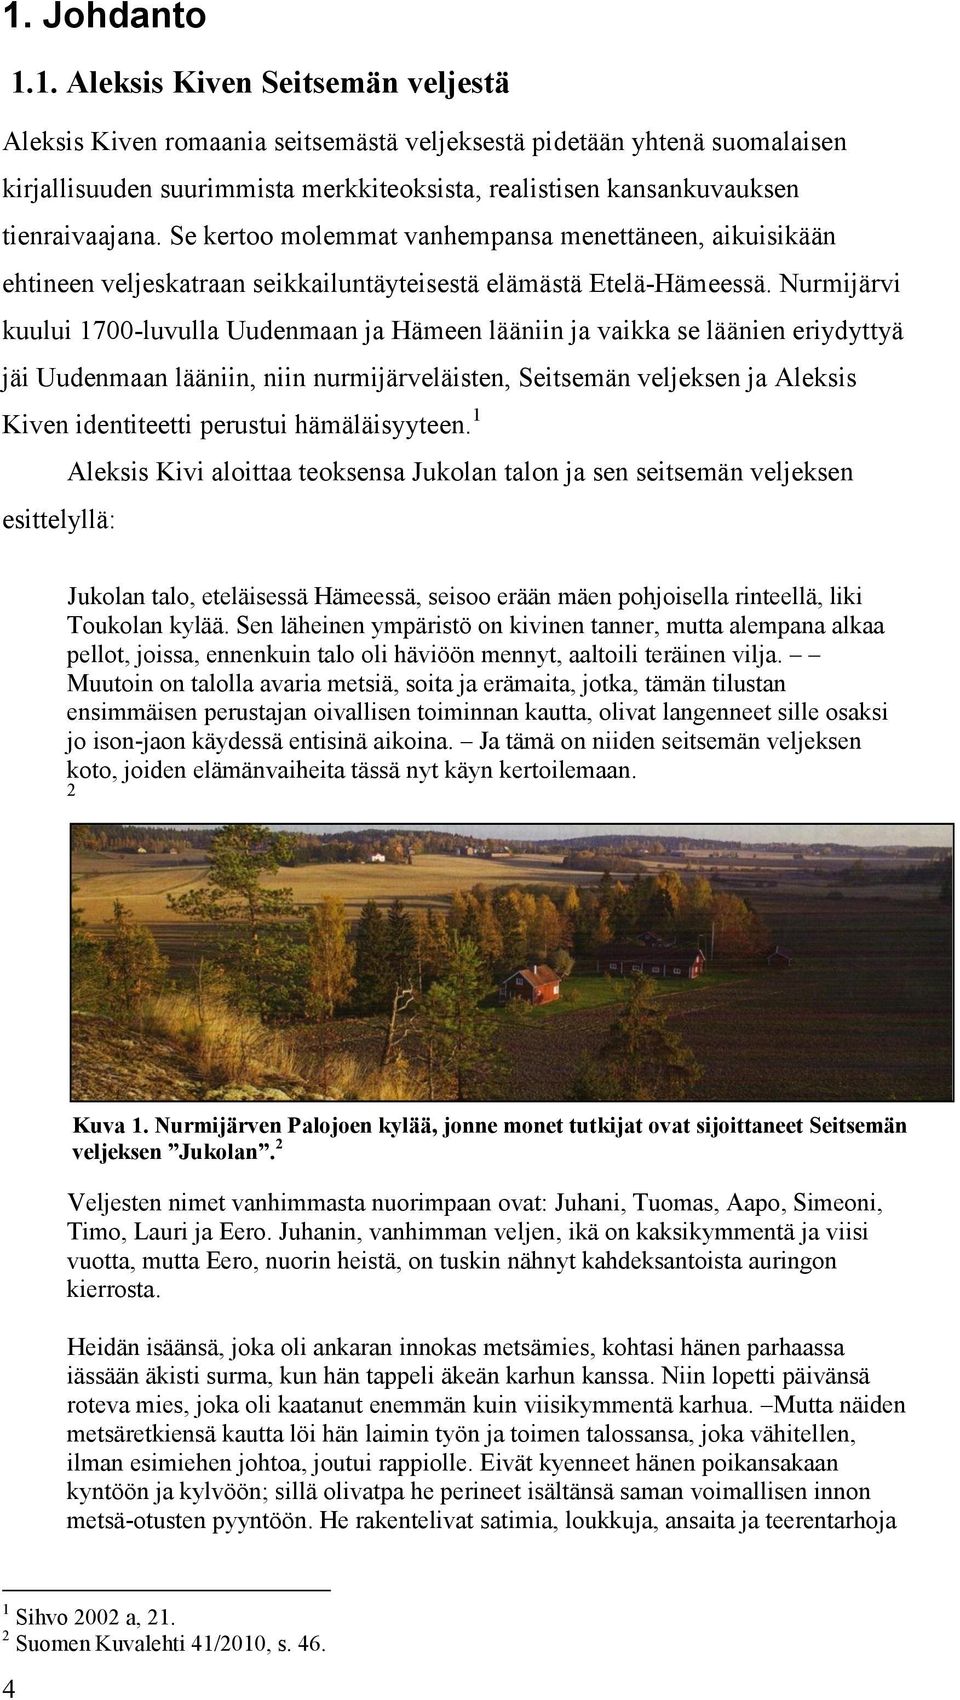 Nurmijärvi kuului 1700-luvulla Uudenmaan ja Hämeen lääniin ja vaikka se läänien eriydyttyä jäi Uudenmaan lääniin, niin nurmijärveläisten, Seitsemän veljeksen ja Aleksis Kiven identiteetti perustui